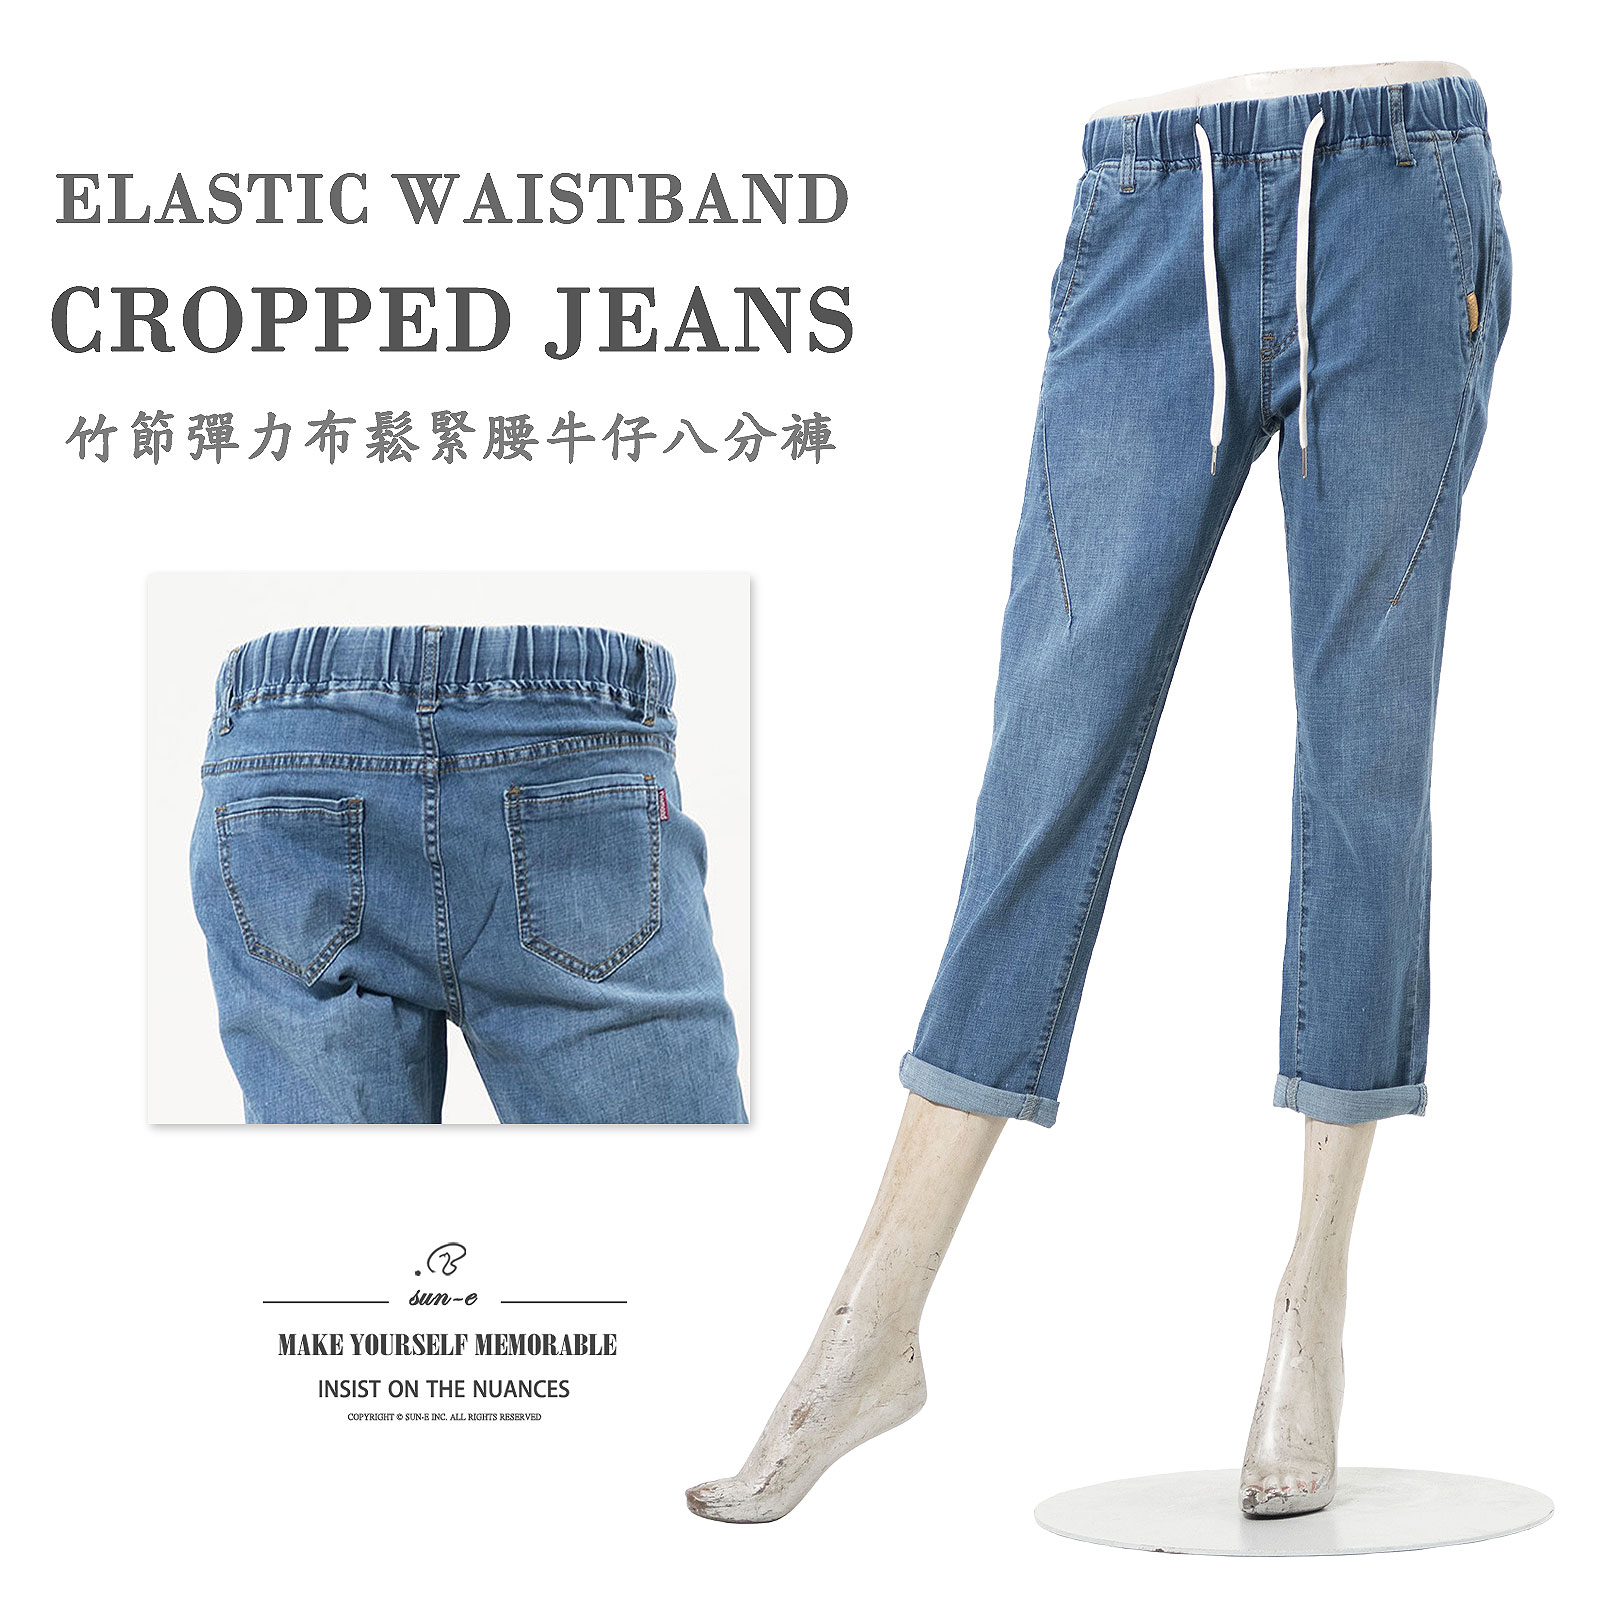 鬆緊腰牛仔八分褲 竹節彈力布八分牛仔褲 彈性中腰丹寧八分褲 刷白褲管顯瘦牛仔長褲 Elastic Waistband Cropped Jeans Mid-Waist Denim Cropped Pants Denim Jeans Denim Pants Stretch Jeans (010-3331-31)牛仔色 M L XL 2L 3L (腰圍:26~35英吋 / 66~89公分) 女 [實體店面保障] sun-e